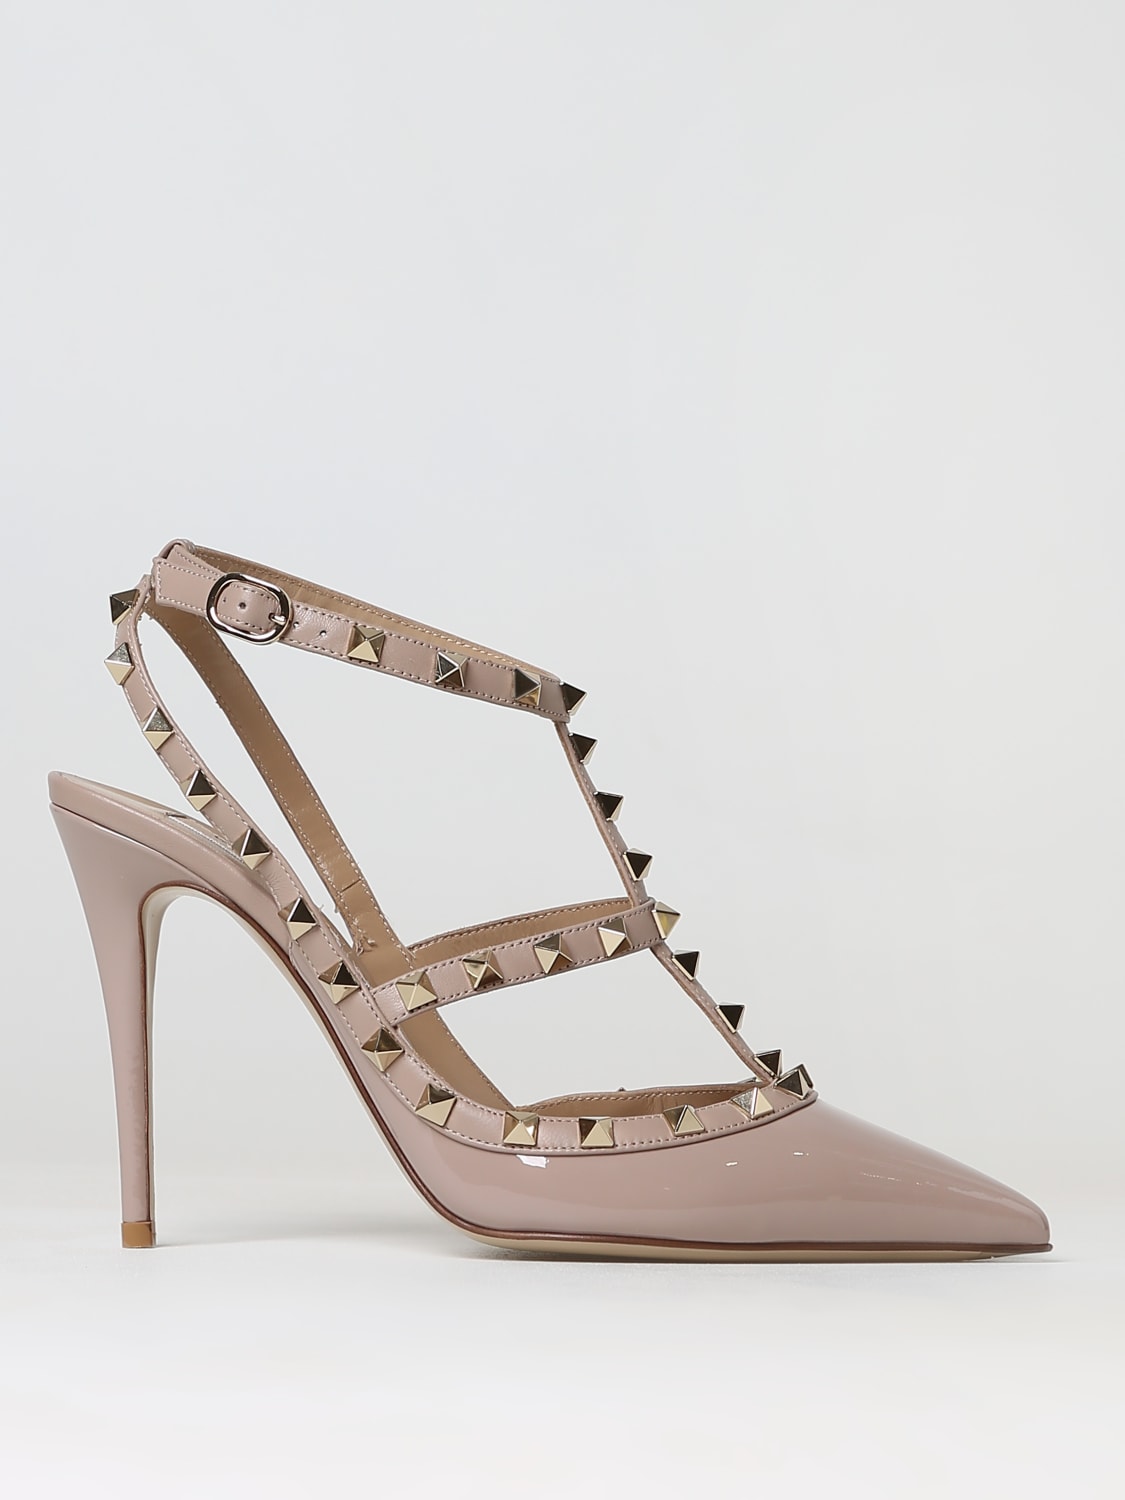 VALENTINO GARAVANI: high heel for woman - Blush Pink | Garavani heel shoes 3W2S0393VNW online on GIGLIO.COM